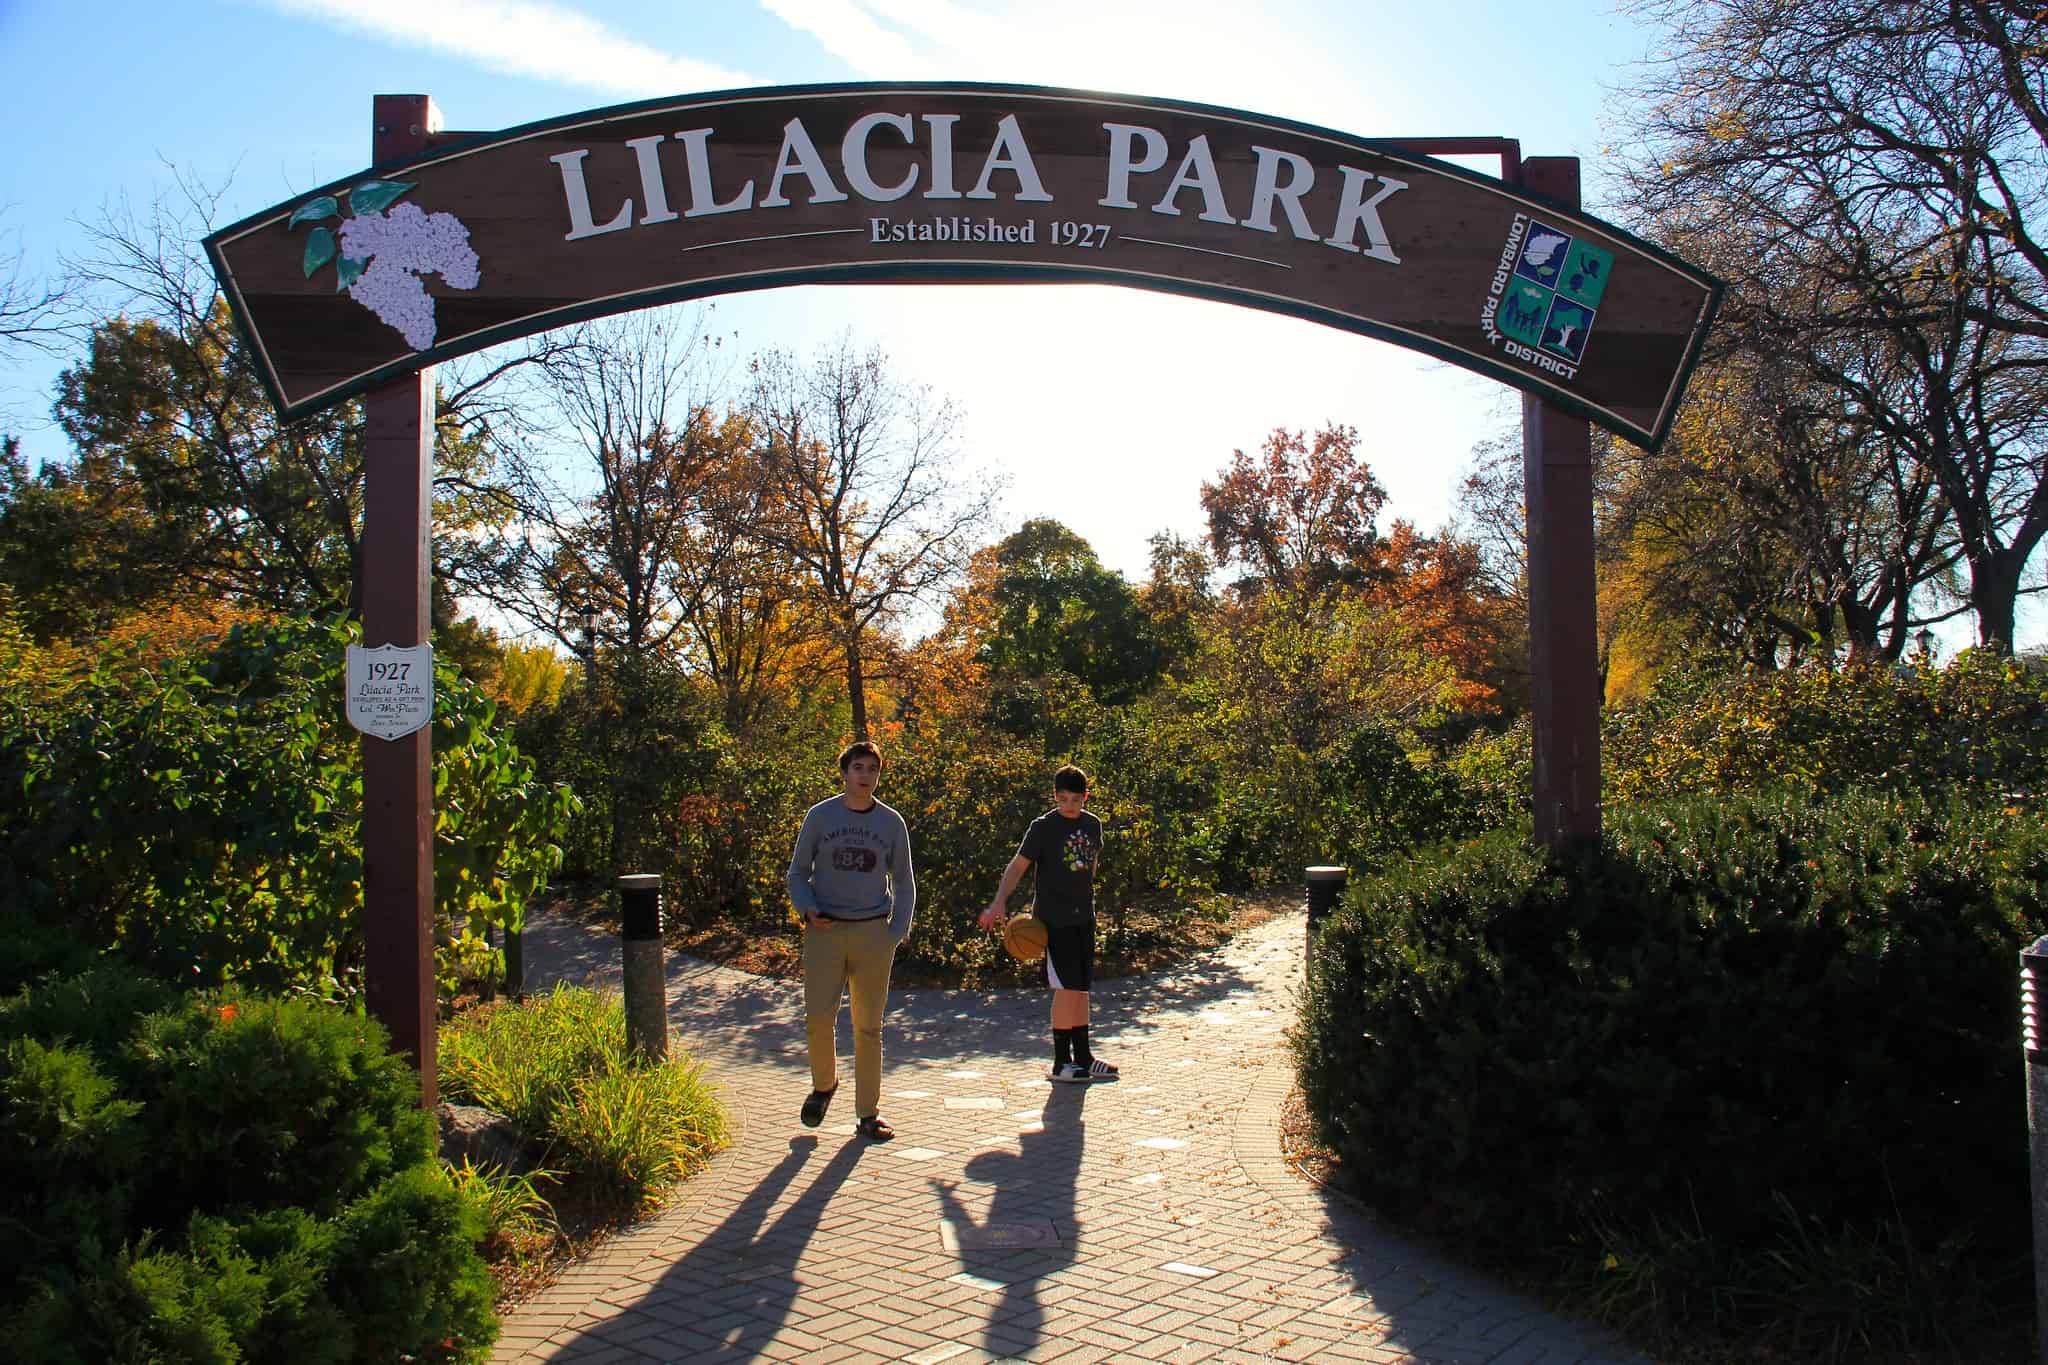 Lilacia Park in Lombard IL